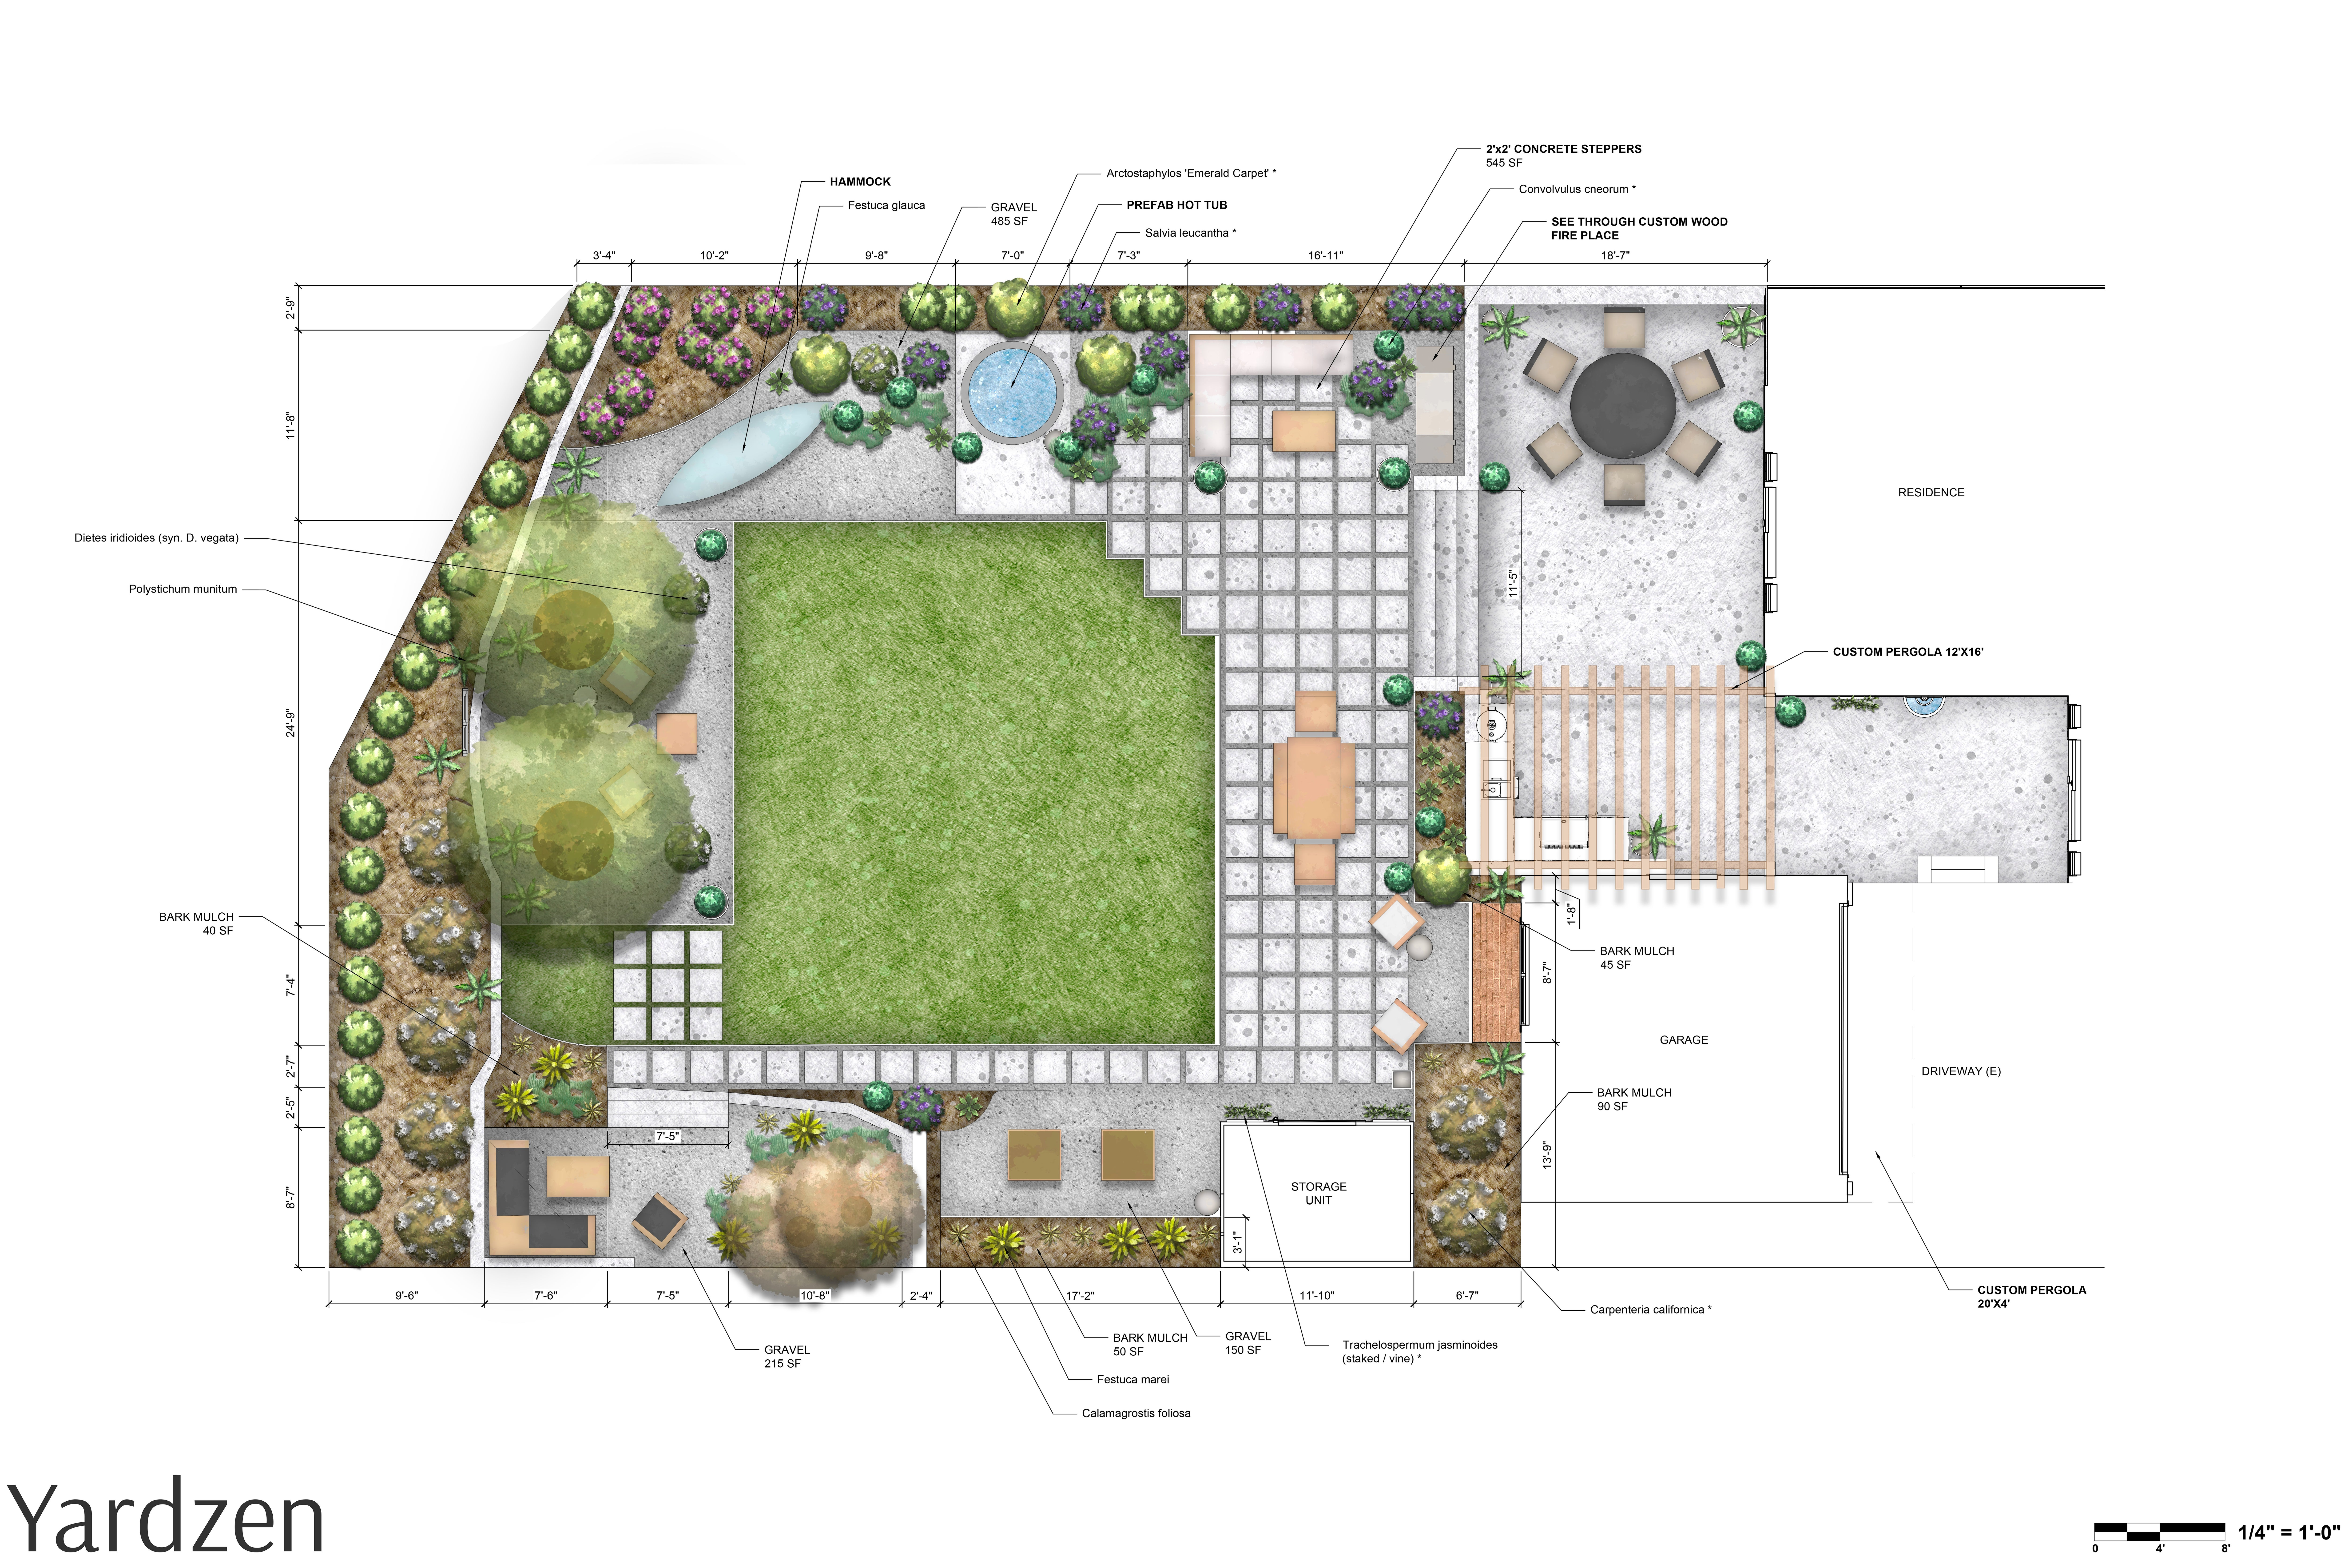 layout of yard